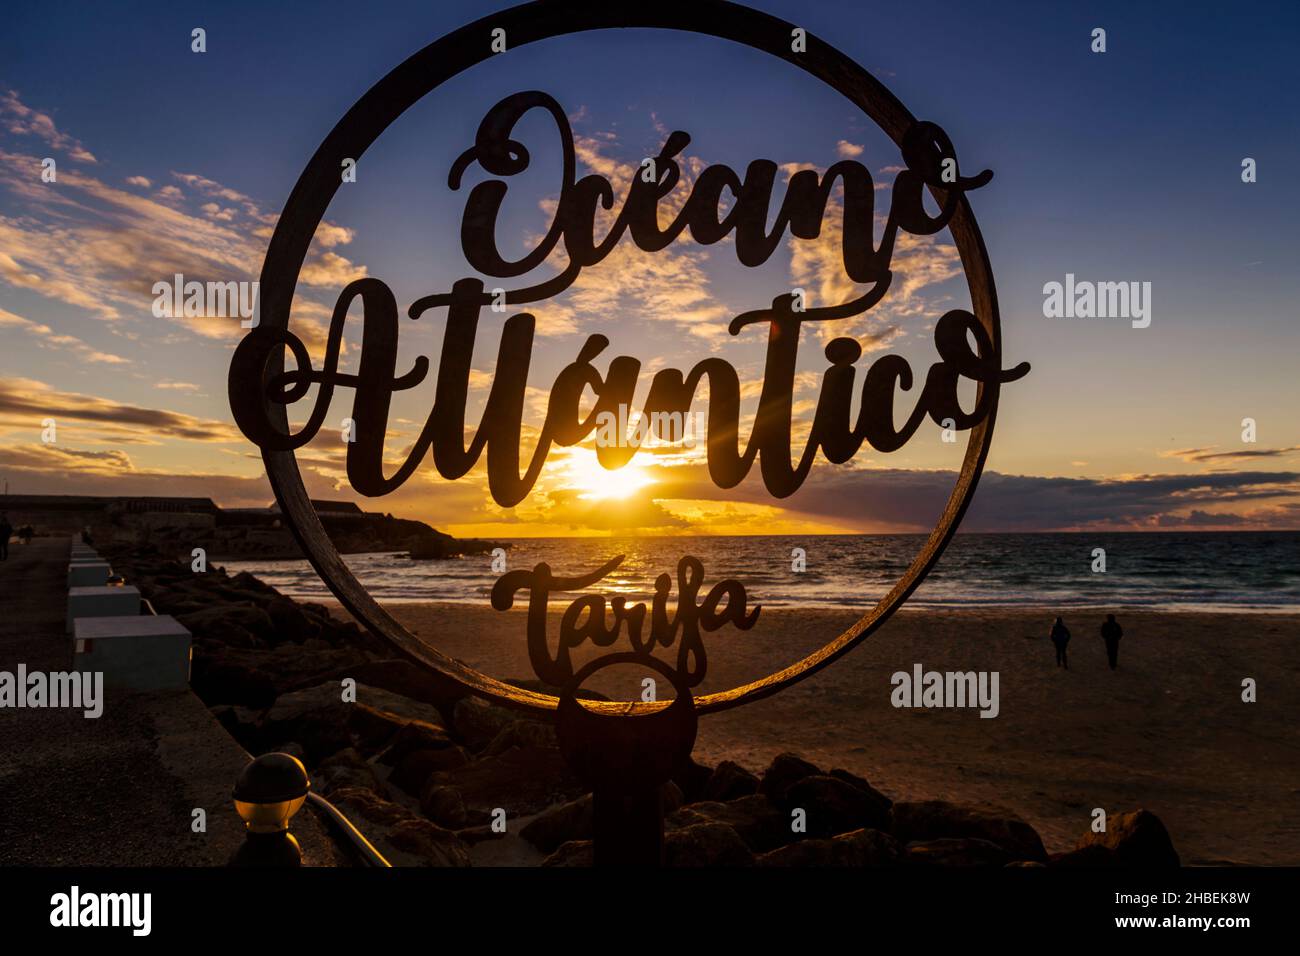 Silhouette d'Oceano Atlantico Tarifa signe et deux personnes marchant sur la plage au coucher du soleil, Tarifa, Cadix, Andalousie, Espagne Banque D'Images